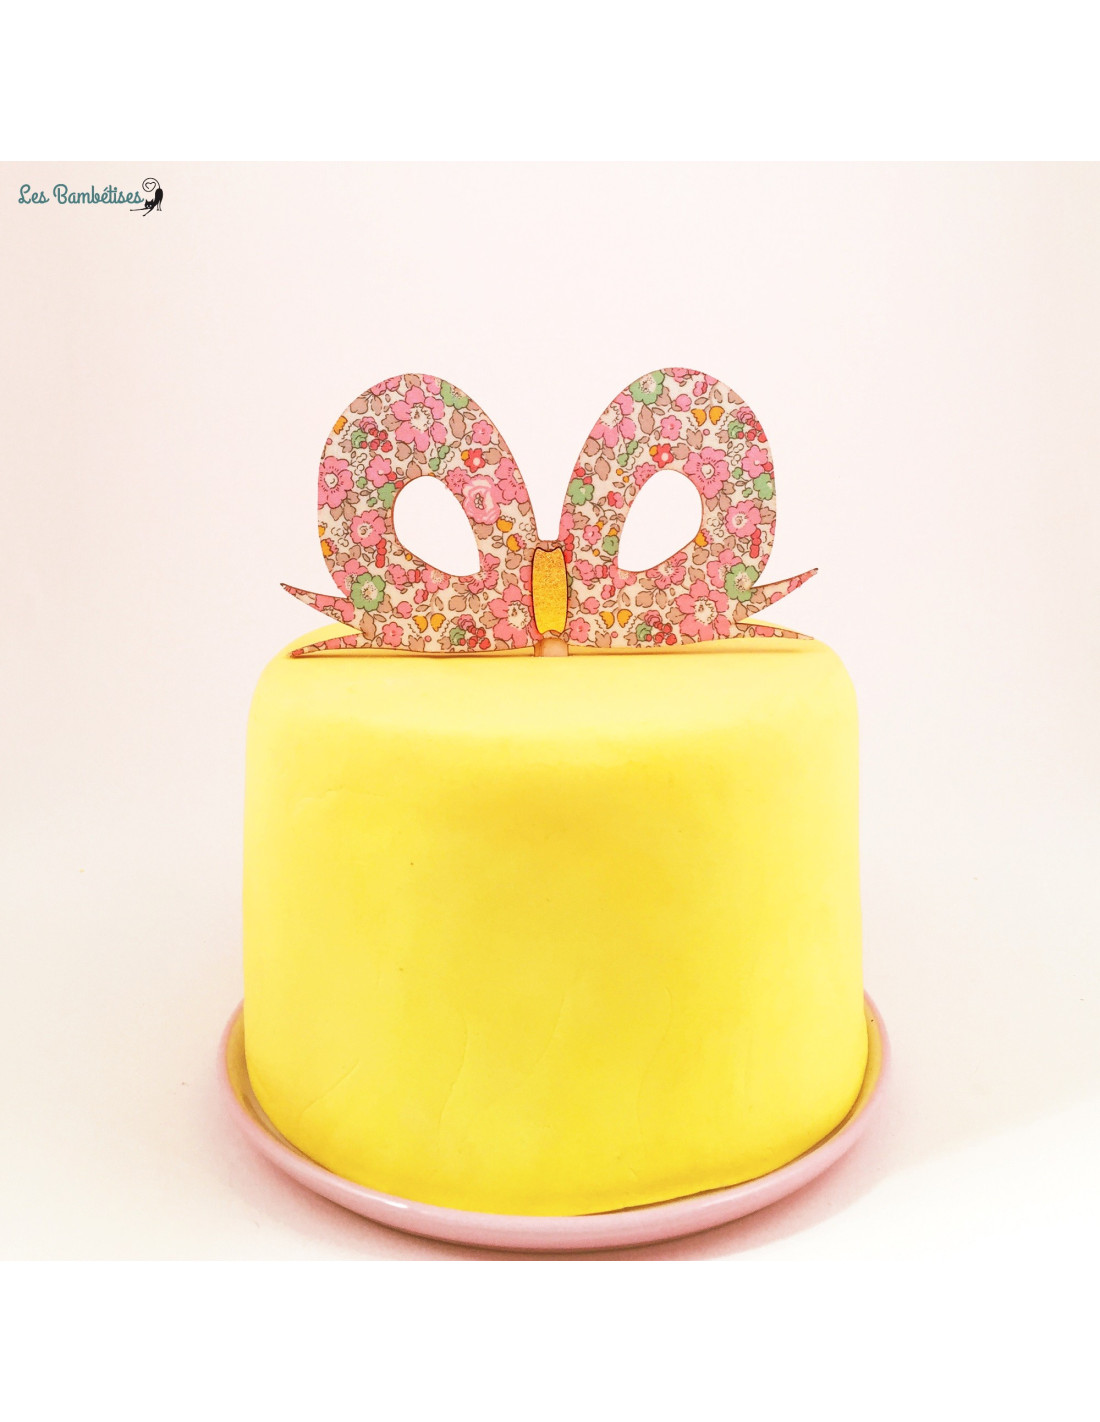 Cake Topper Happy Birthday Bois - Les Bambetises